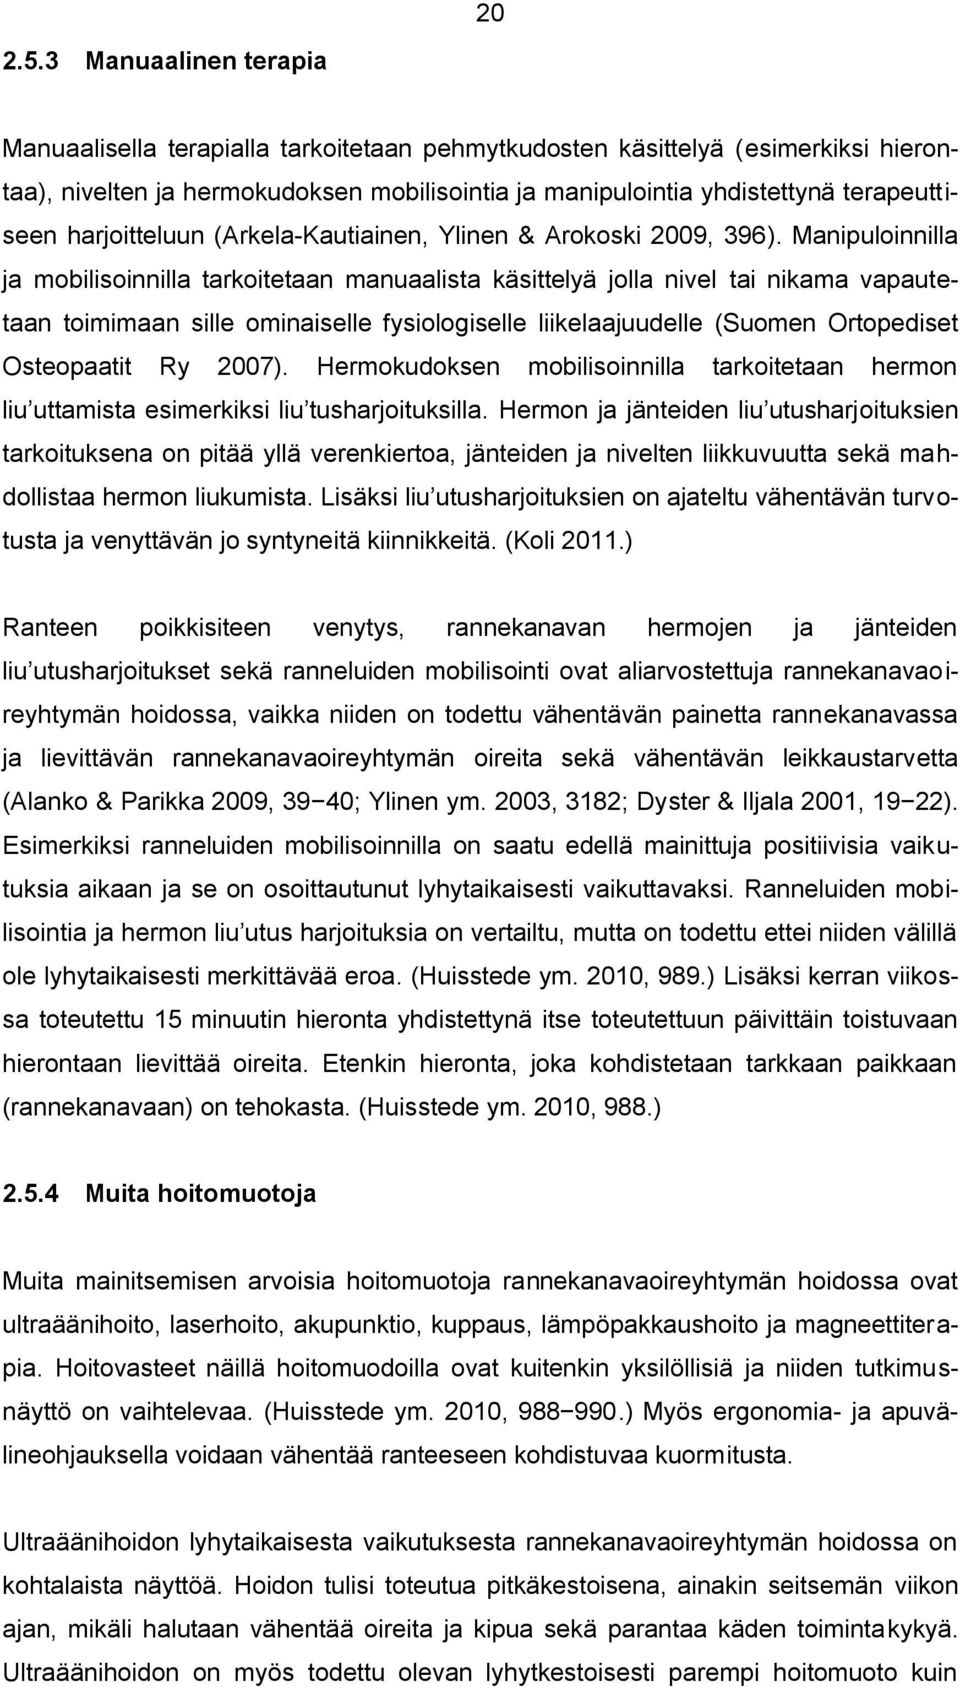 harjoitteluun (Arkela-Kautiainen, Ylinen & Arokoski 2009, 396).